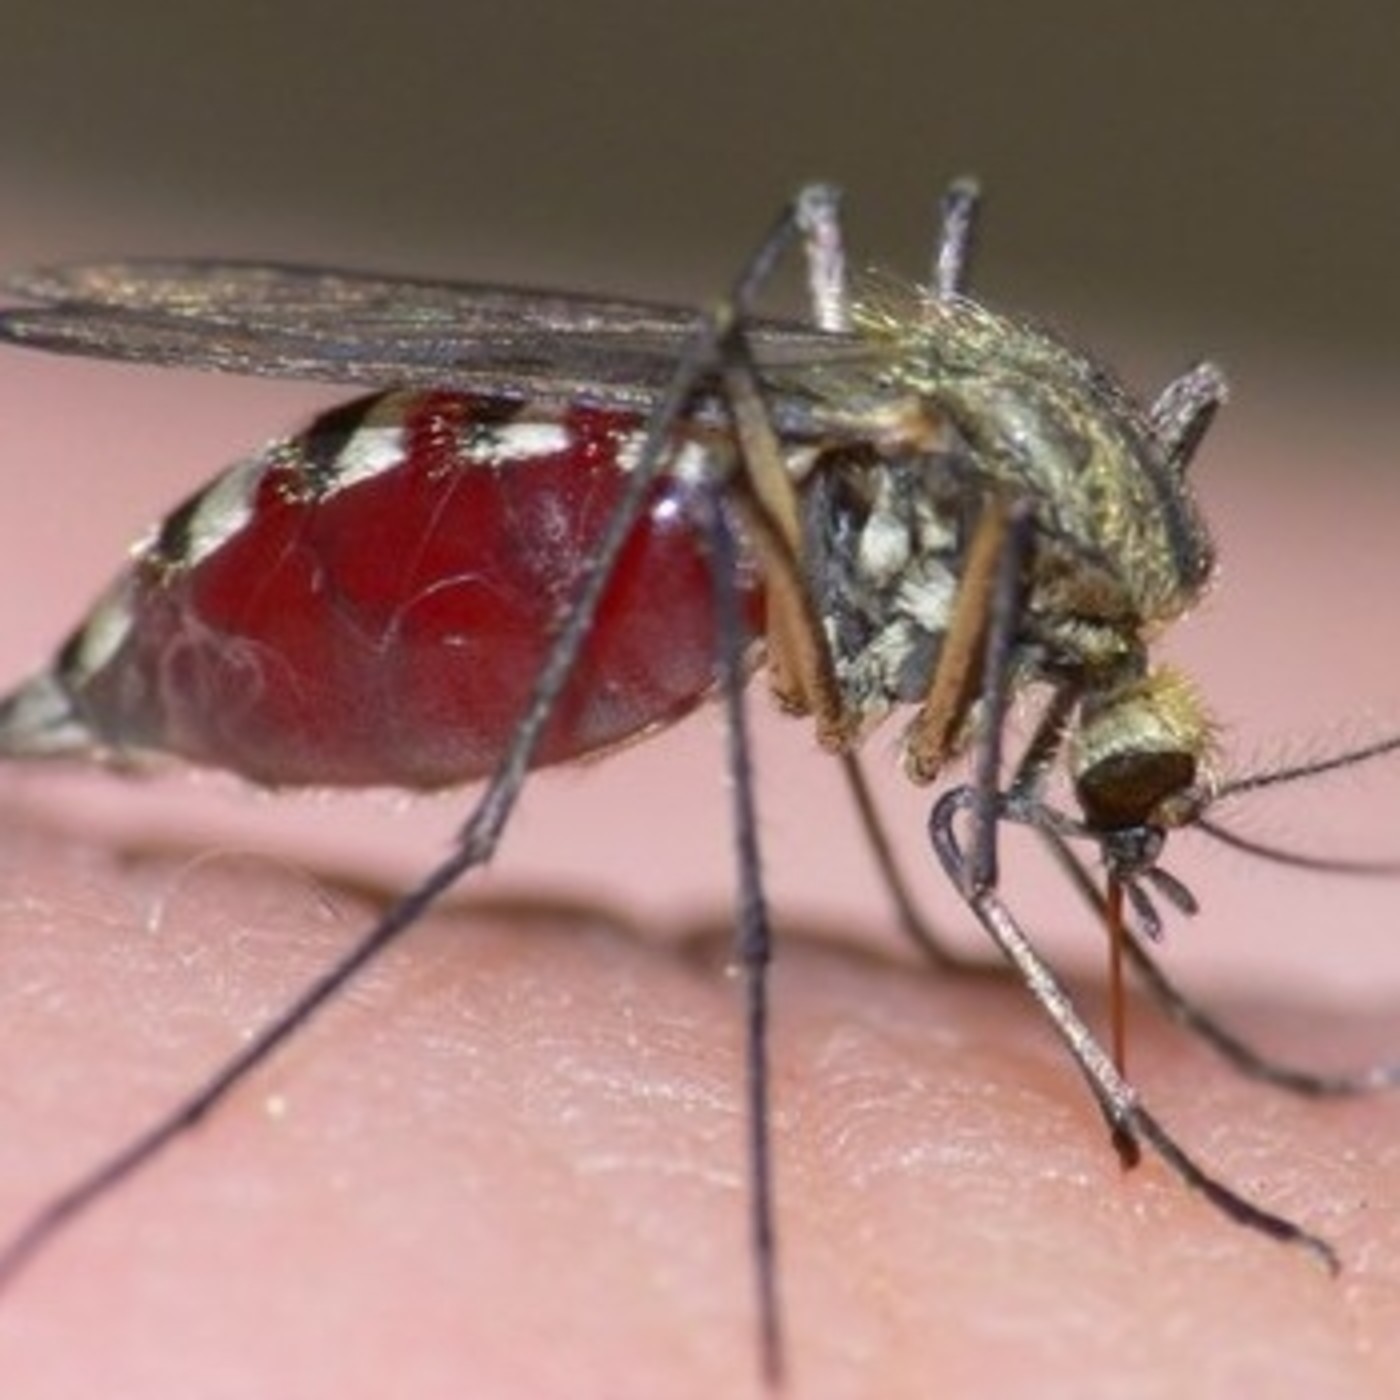 Сколько нужно комаров, чтобы выпить всю кровь у человека